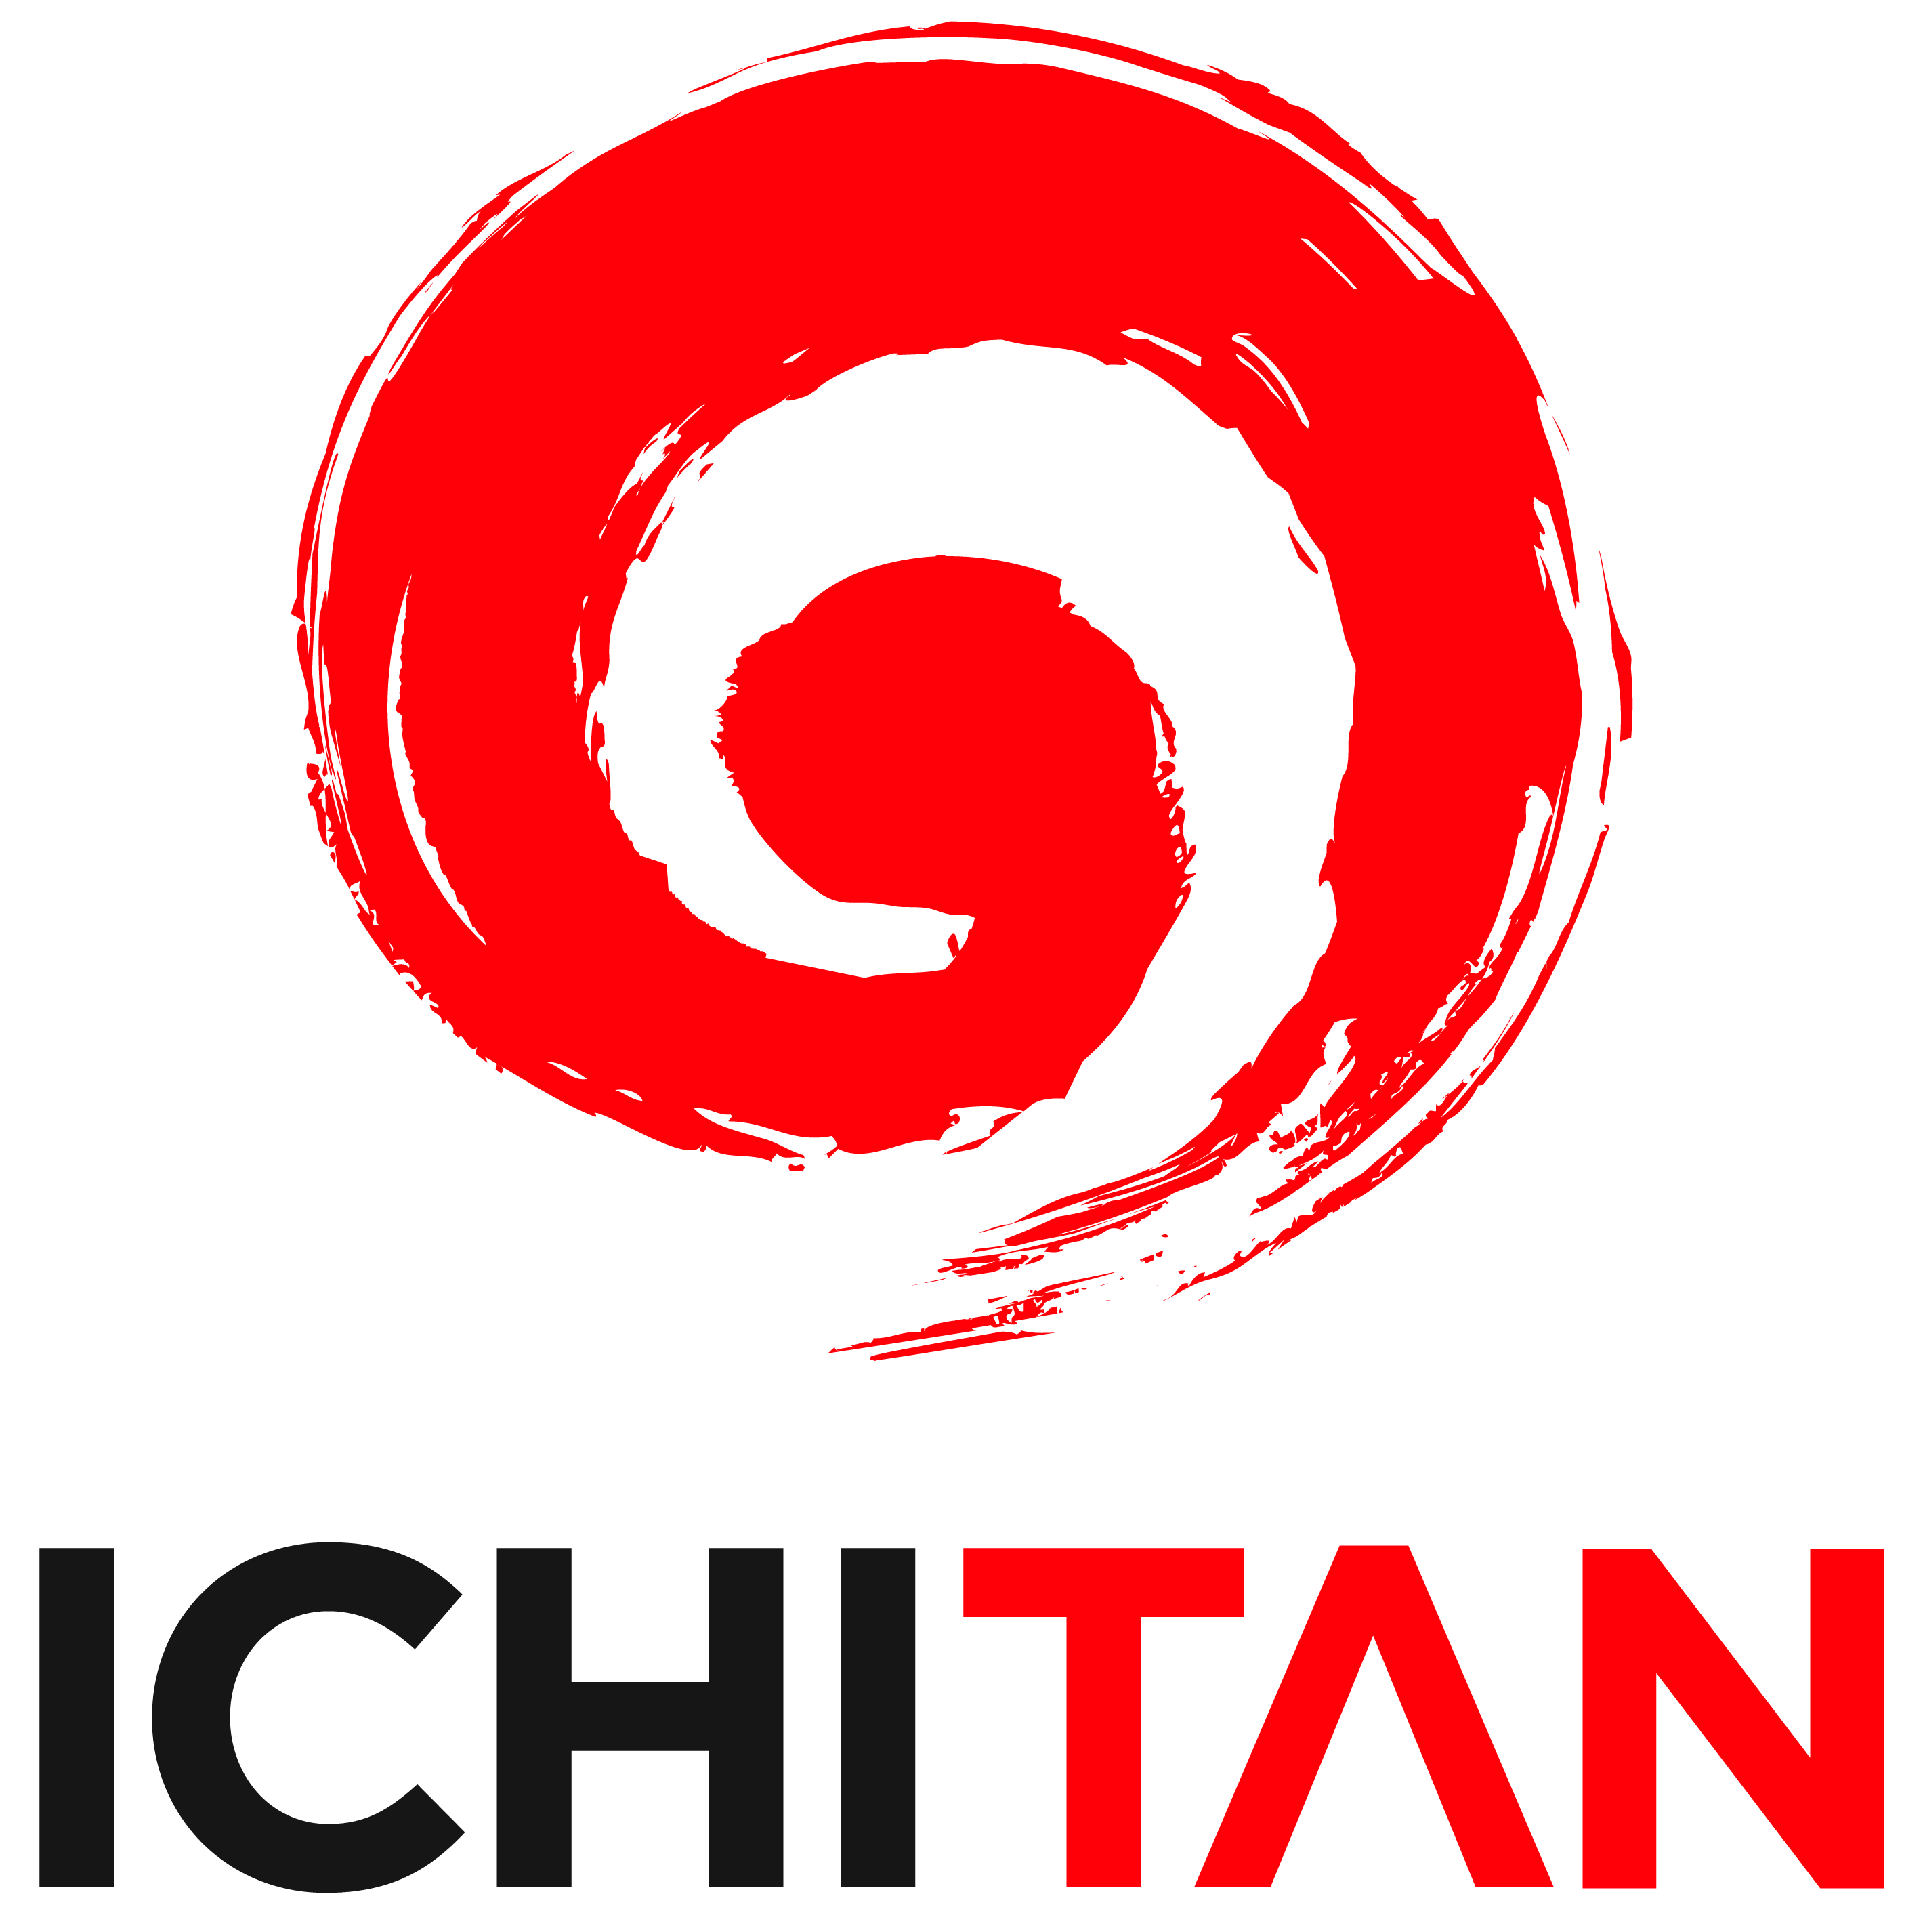 PT Ichi Tan Indonesia - Distribusi produk minuman kemasan ICHITAN